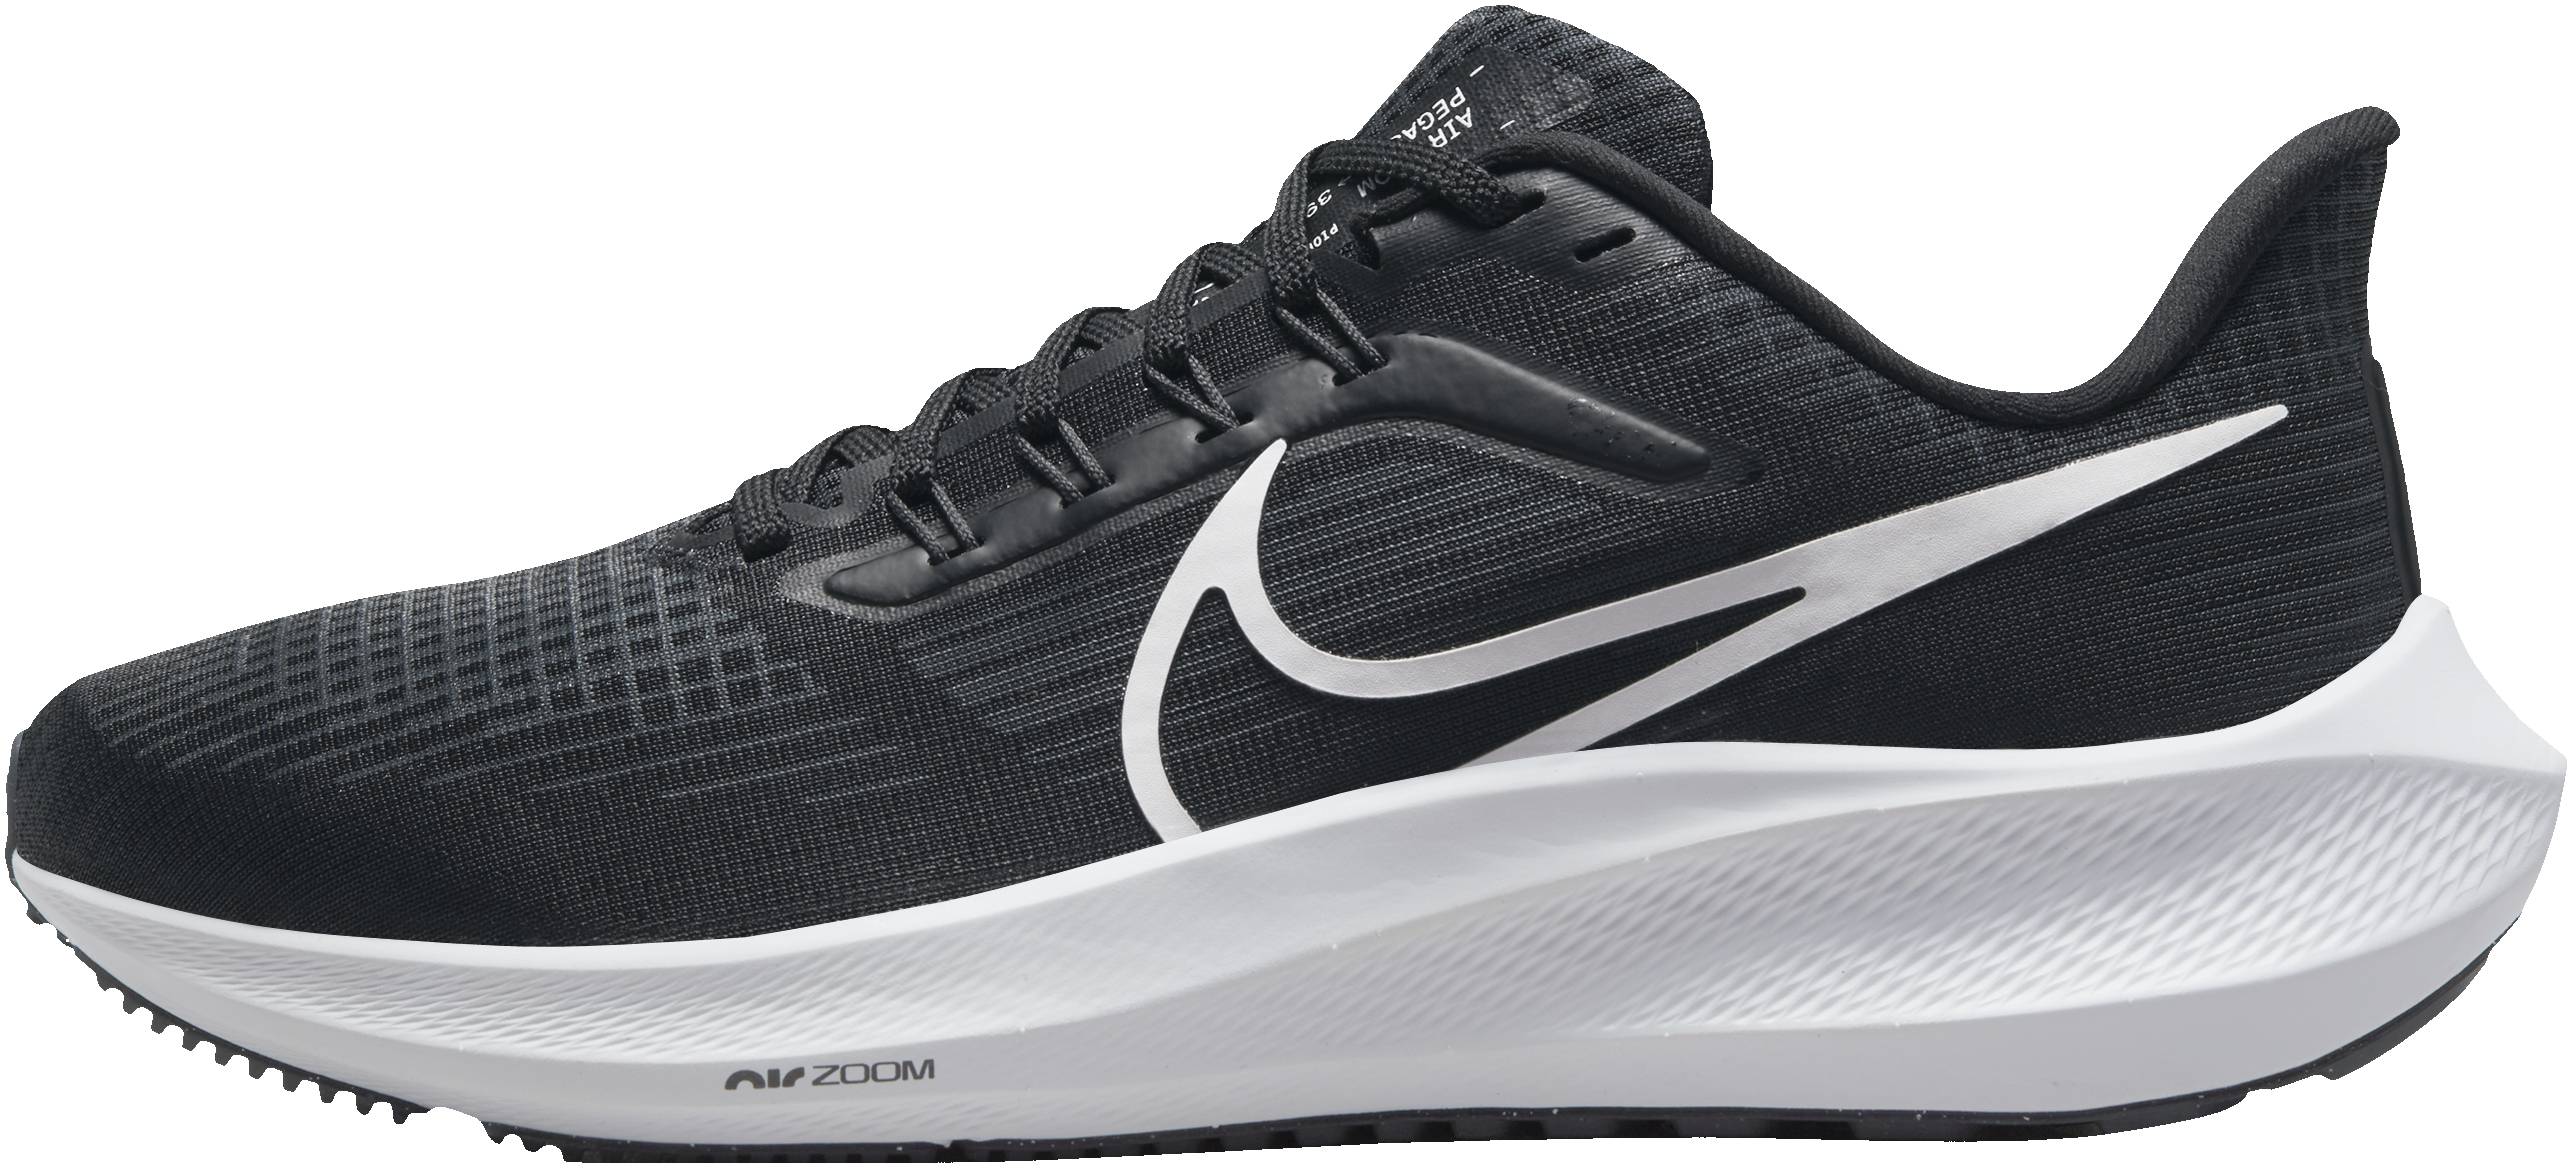 Nike nike pegasus all zoom Air Zoom Pegasus 39 Review 2022, Facts, Deals ($92) | RunRepeat